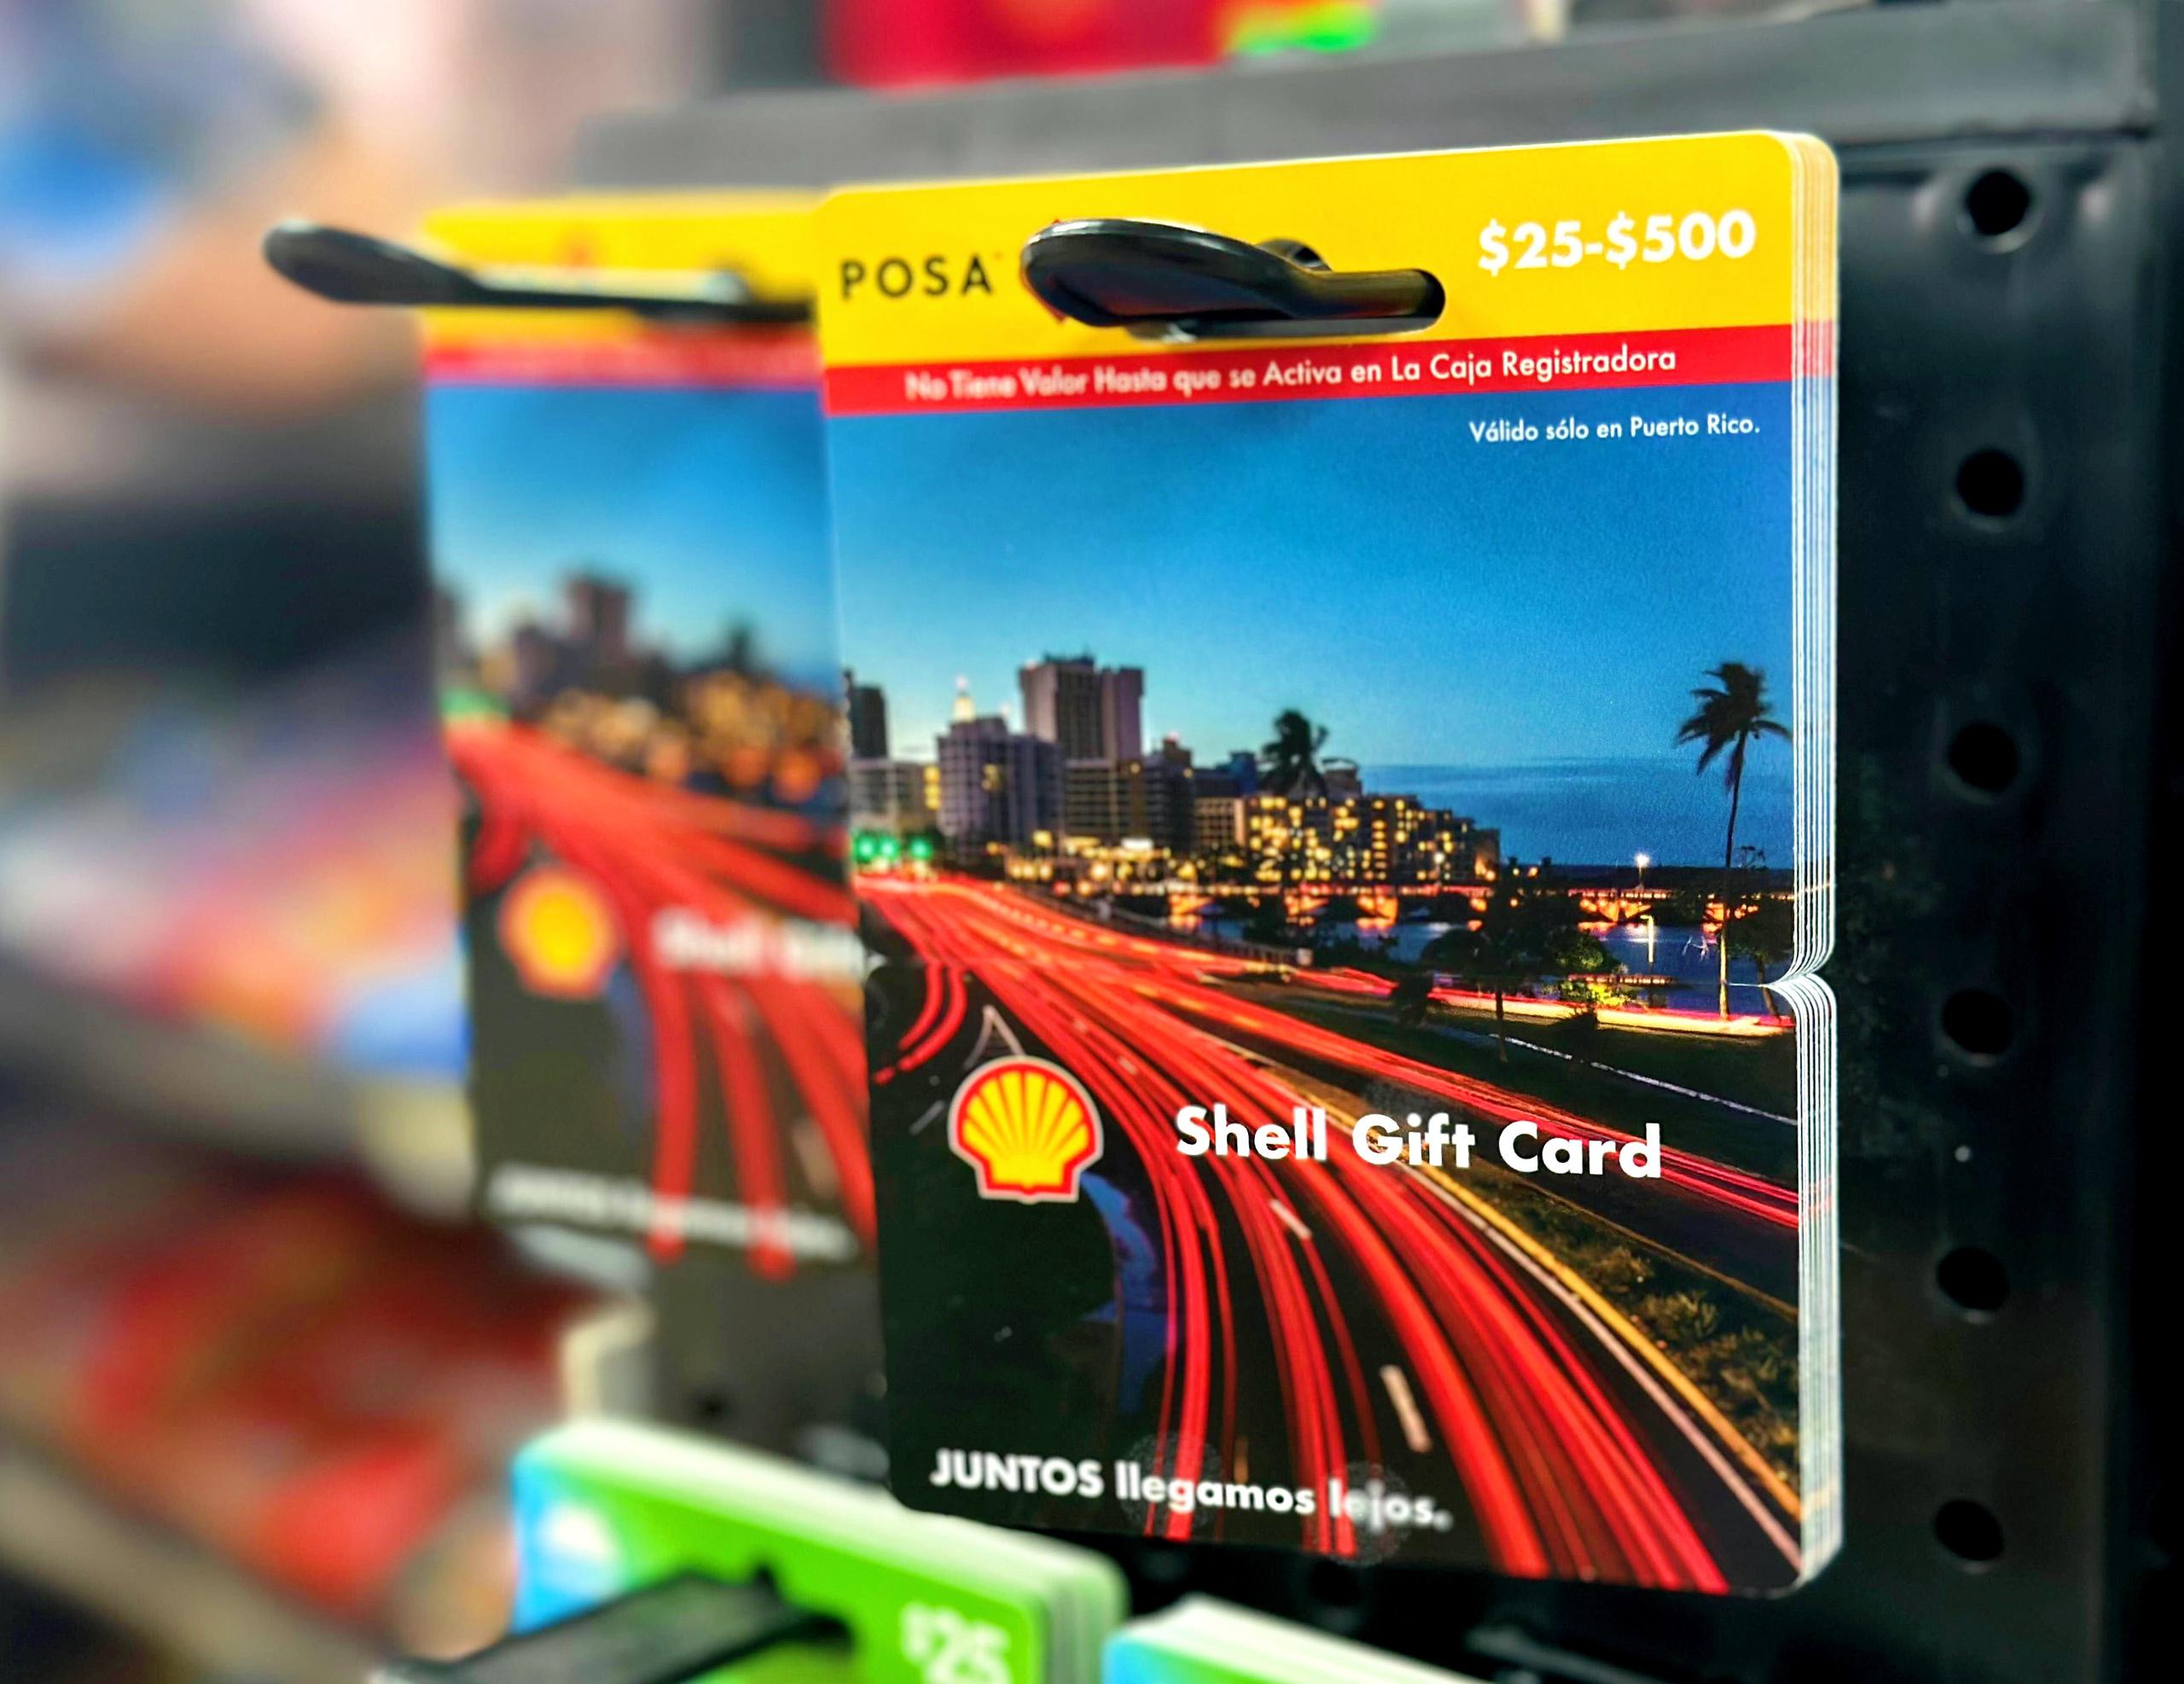 Las tarjetas de regalo Shell son la nueva oferta que ofrece la gasolinera a sus clientes.